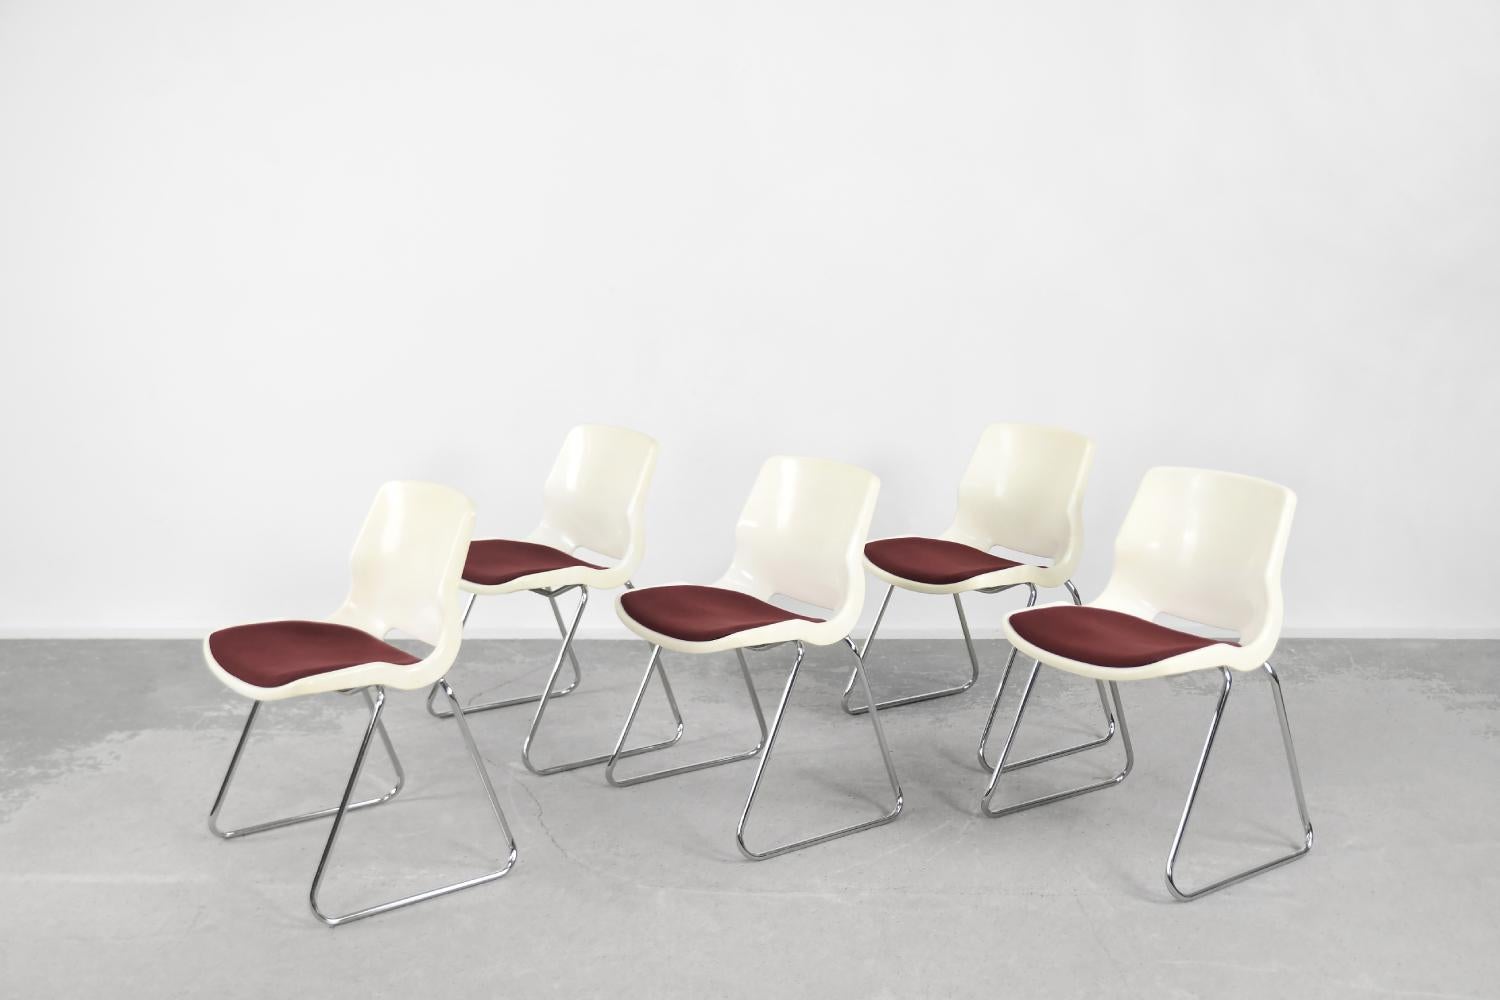 Cet ensemble de chaises a été conçu par Svante Schöblom pour la manufacture suédoise Overman dans les années 1970. Ils ont été produits en plusieurs couleurs, mais le modèle blanc est le plus universel. Il s'adapte à n'importe quel espace et combine